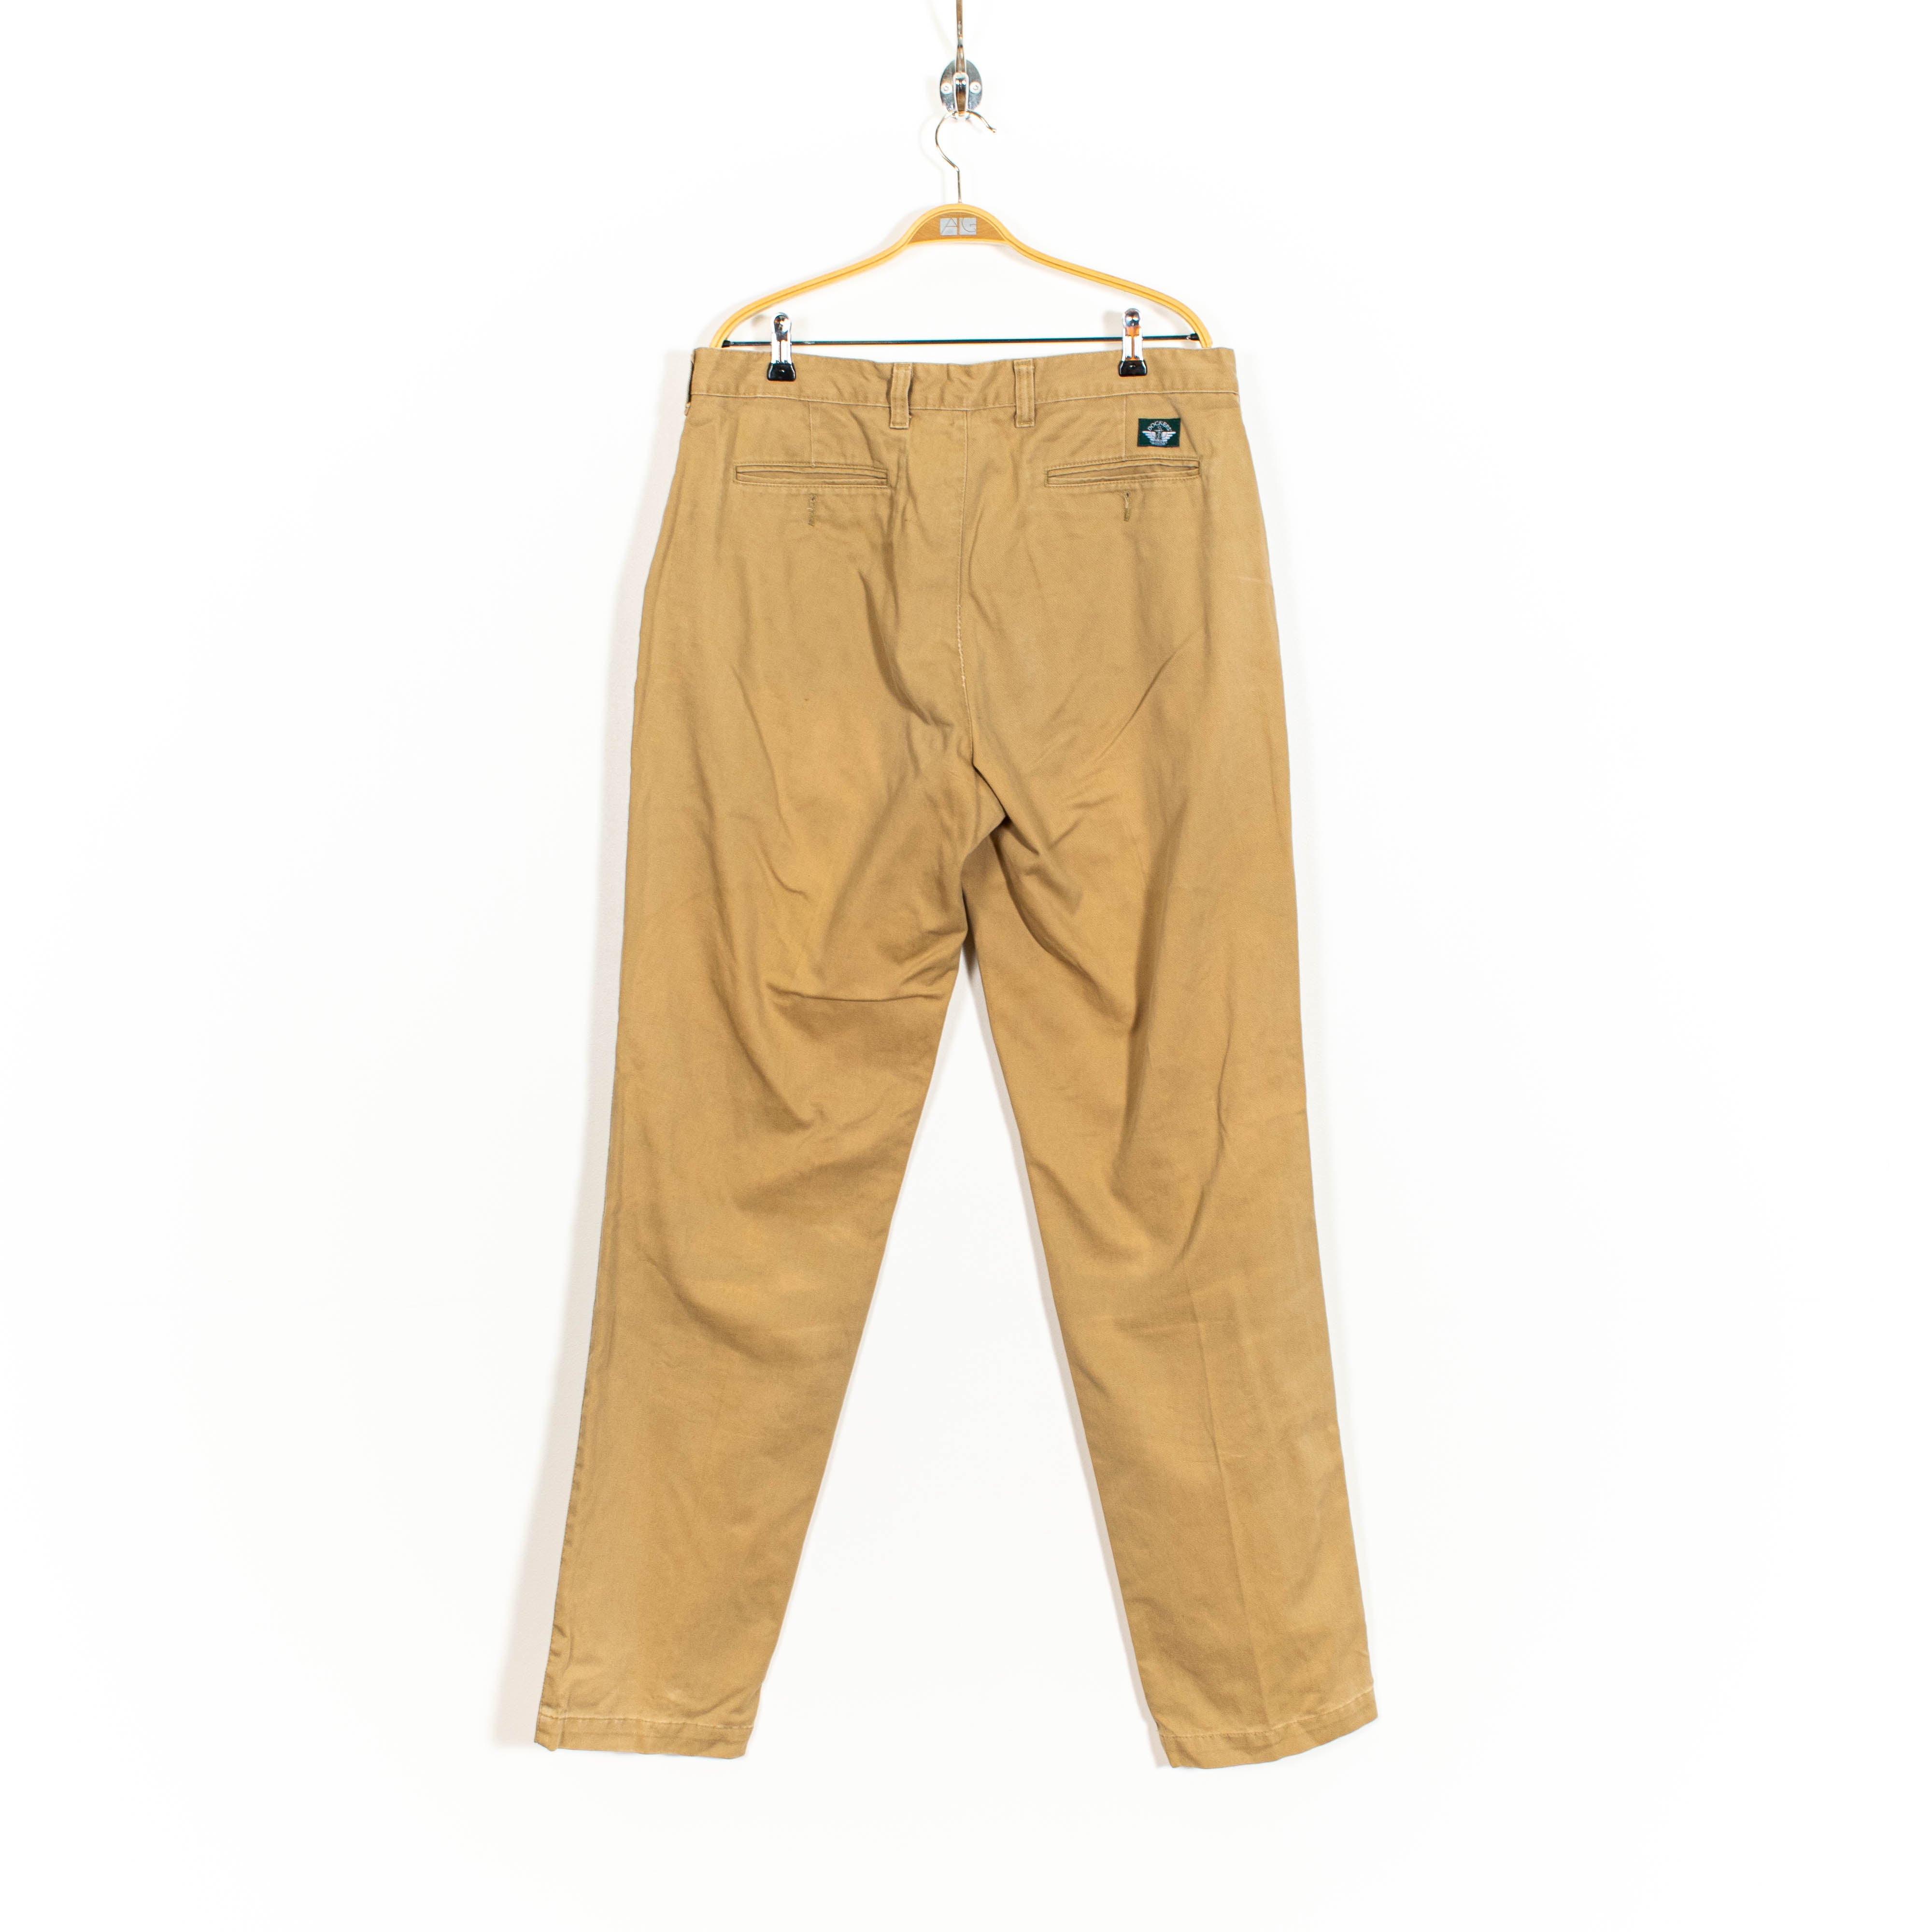 Dockers Brown Zip Up Straight Fit Pants Mens US34